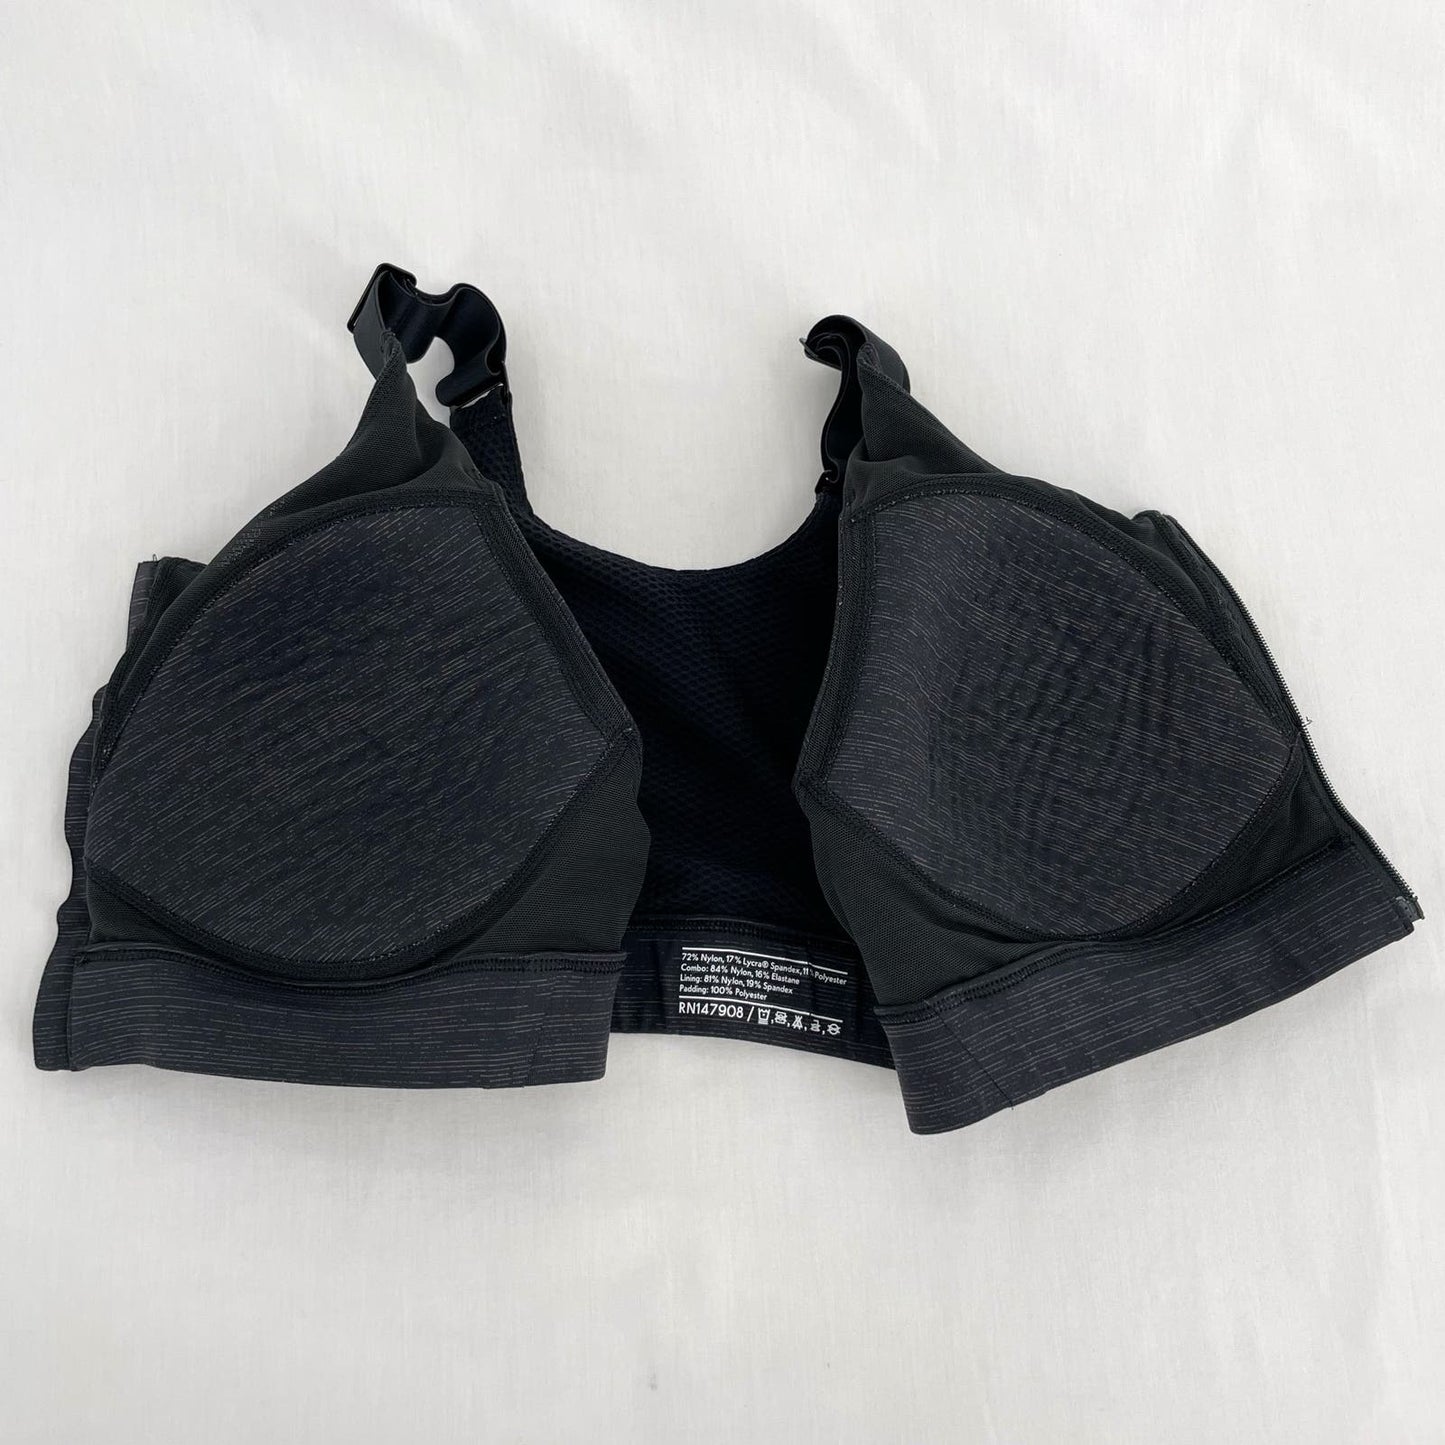 Outdoor Voices Zip Up Front Sports Bra Night Black Dark Gray Adjustable Strap Size XL (C/D)